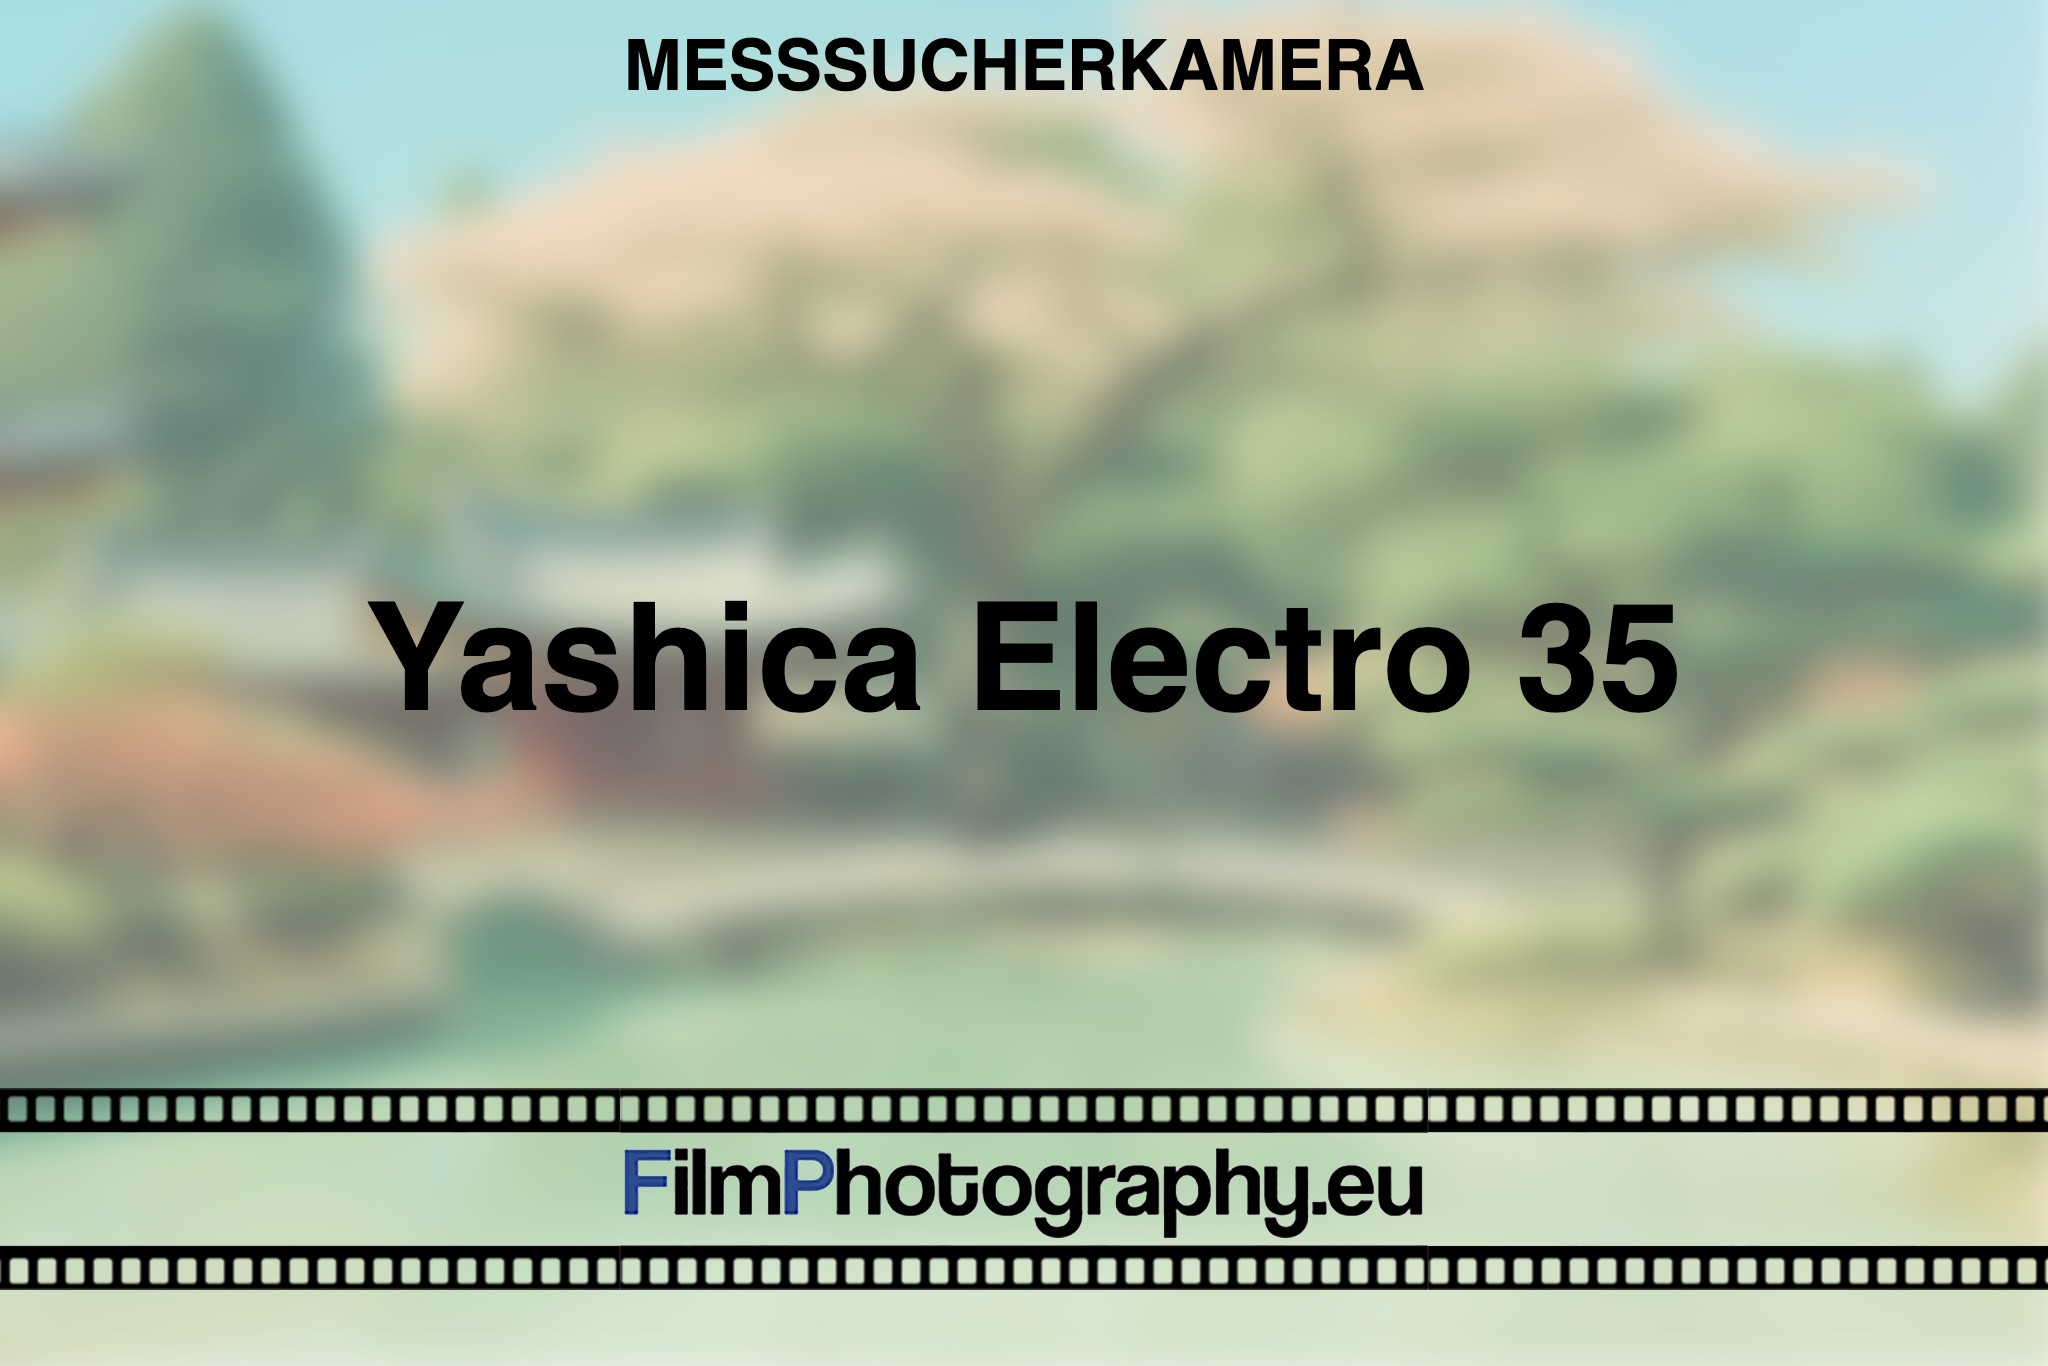 yashica-electro-35-messsucherkamera-bnv